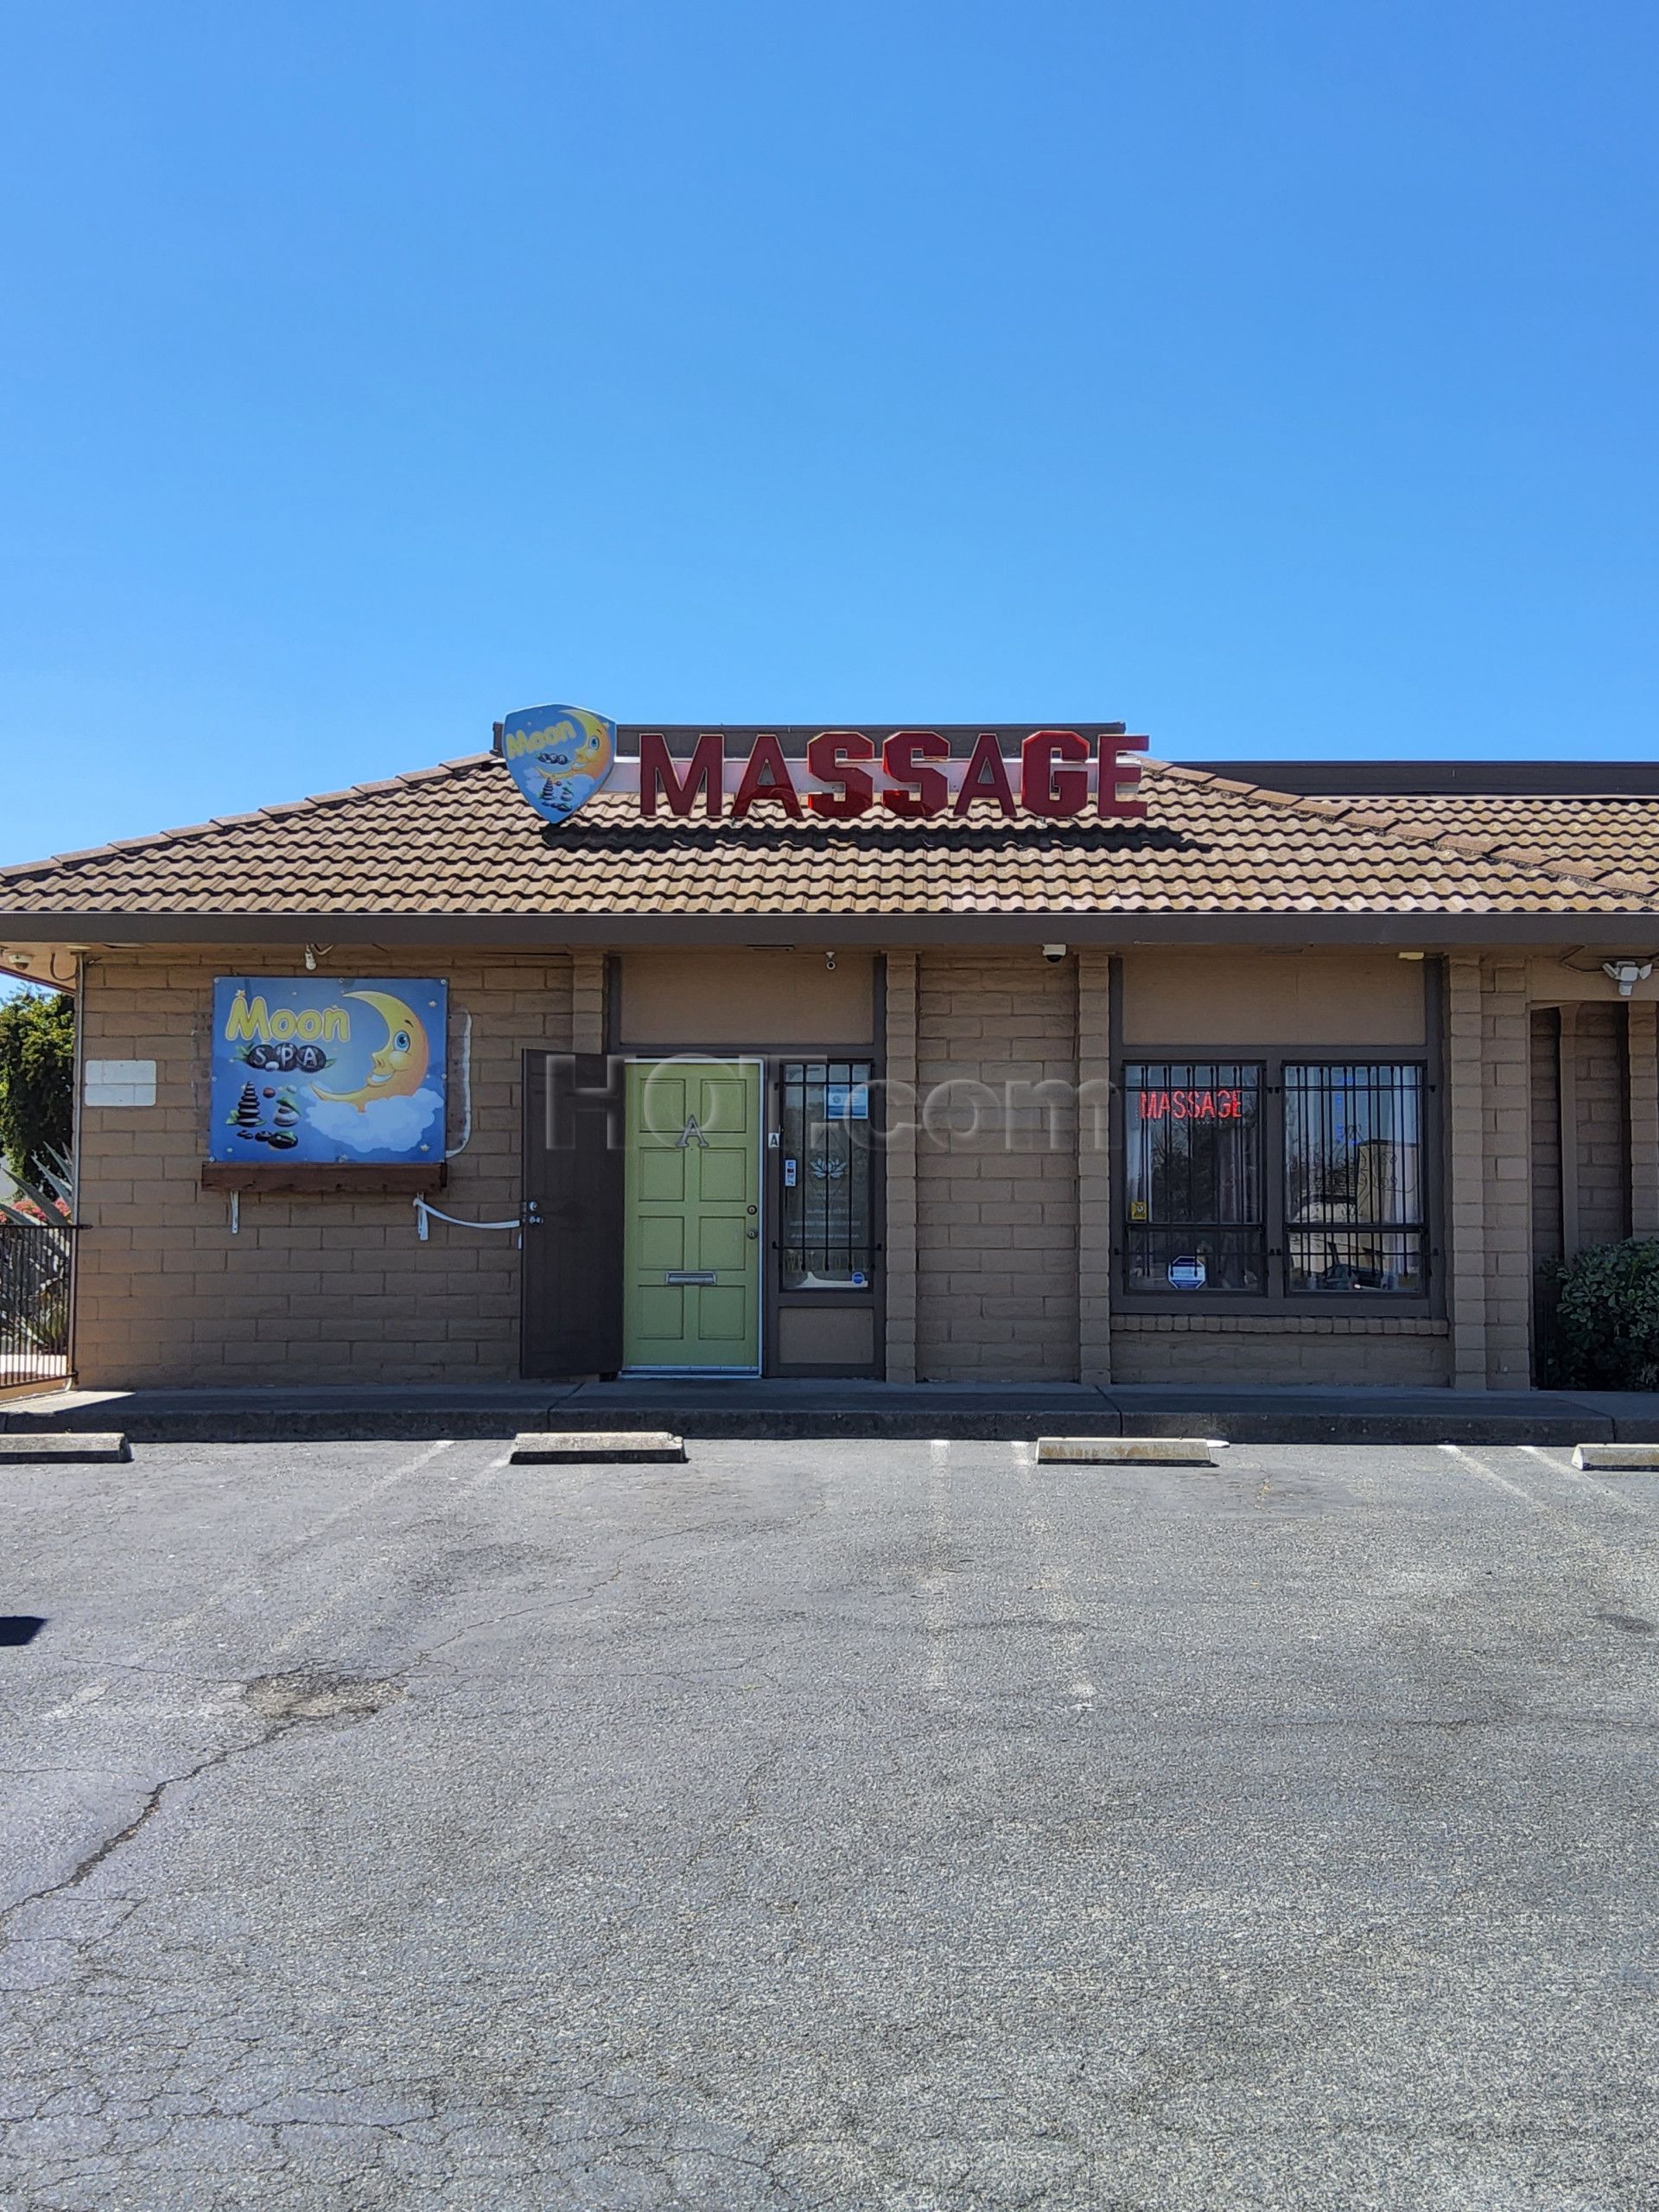 Antioch, California Moon Massage Spa